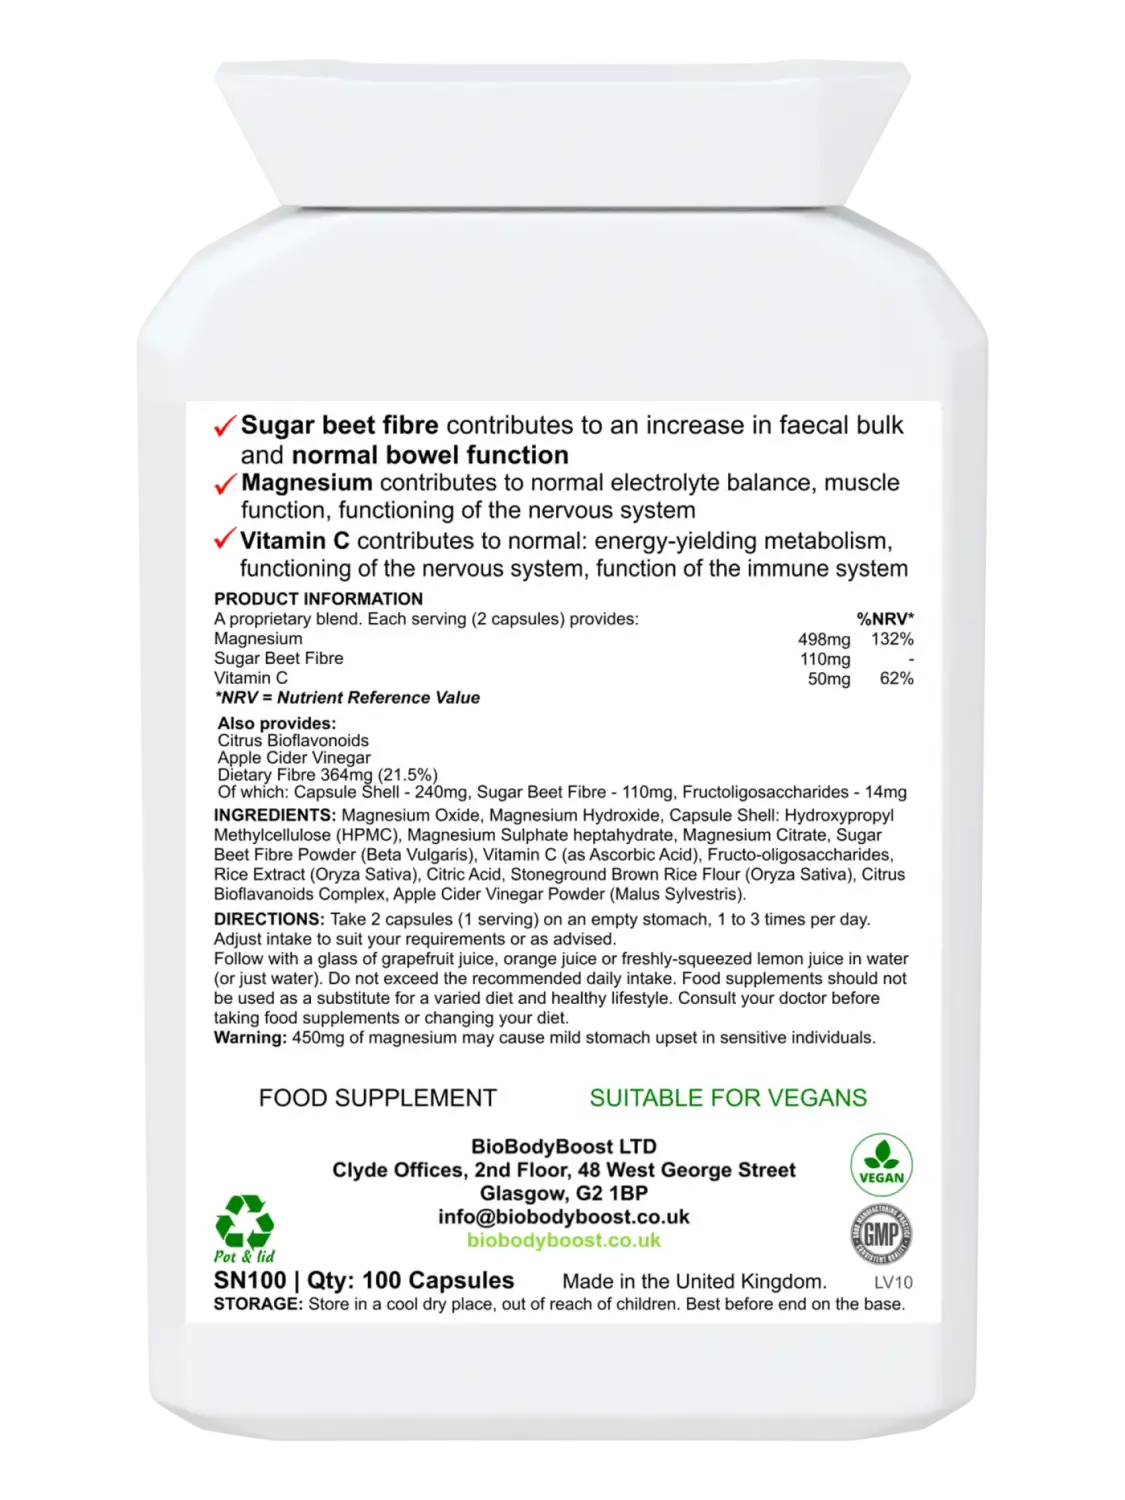 MagneBowel Magnesium Cleanse & Detox Formula - Vitamins Supplements sugar beet fibre